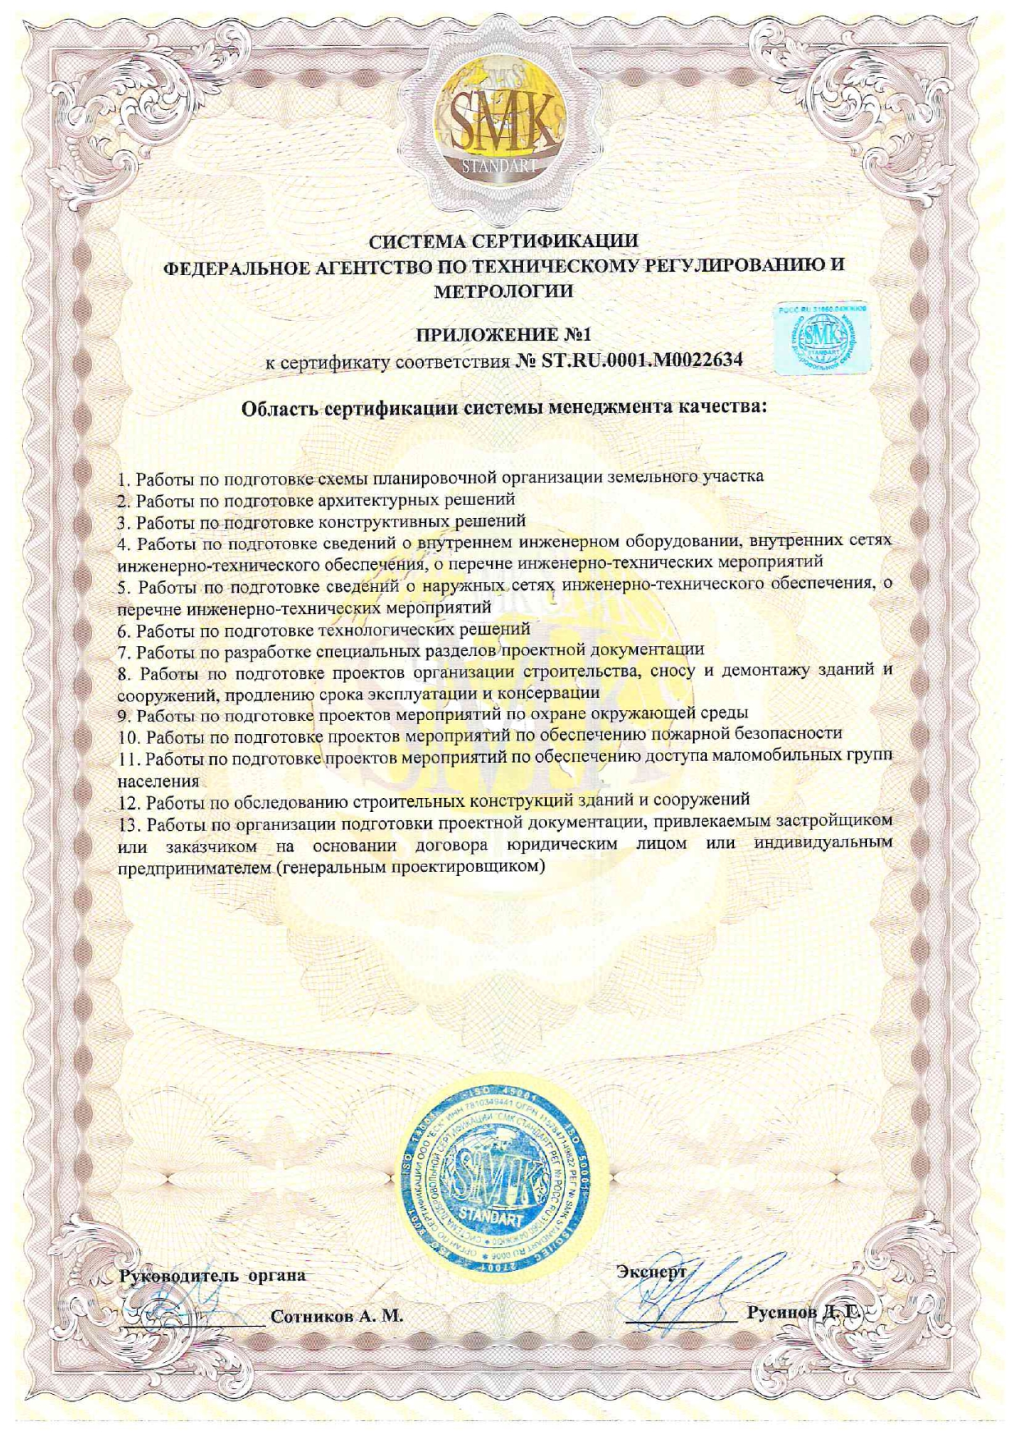 Приложение к сертификату соответствия SMK